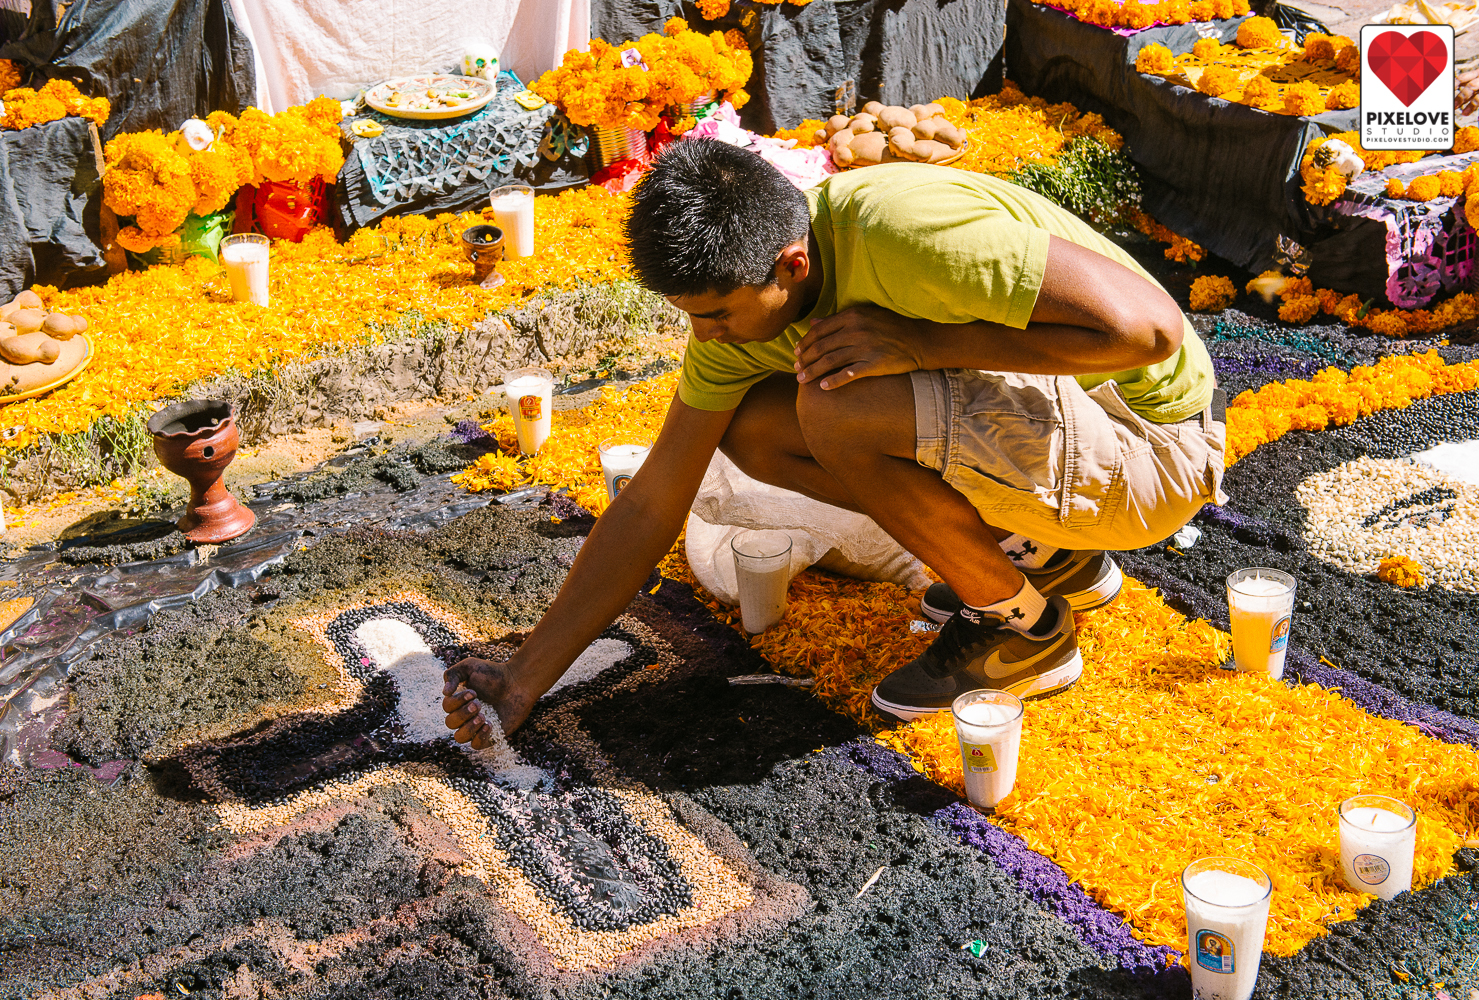 Celebracion del dia de los muertos el 1 y 2 de noviembre en San Miguel de Allende, Guanajuato. Day of the Dead celebration on Novemeber 1st and 2nd in San Miguel de Allende, Guanajuato, Mexico.